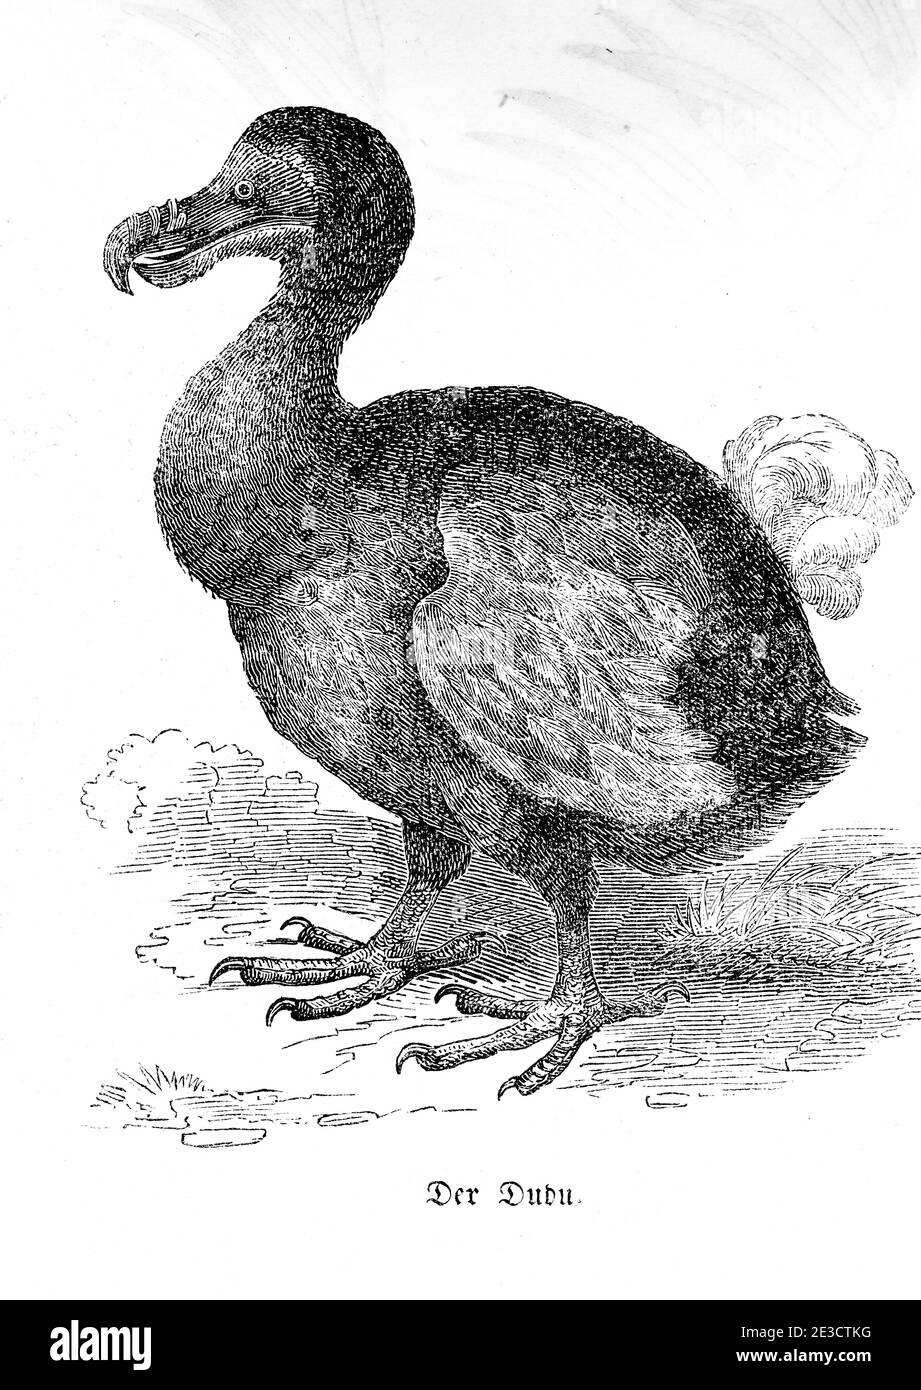 The Mauritian Dudu, an extinct bird, Swiss Calendar with stories about foreign animals and corresponding motives, St. Gallen Switzerland 1853 Stock Photo